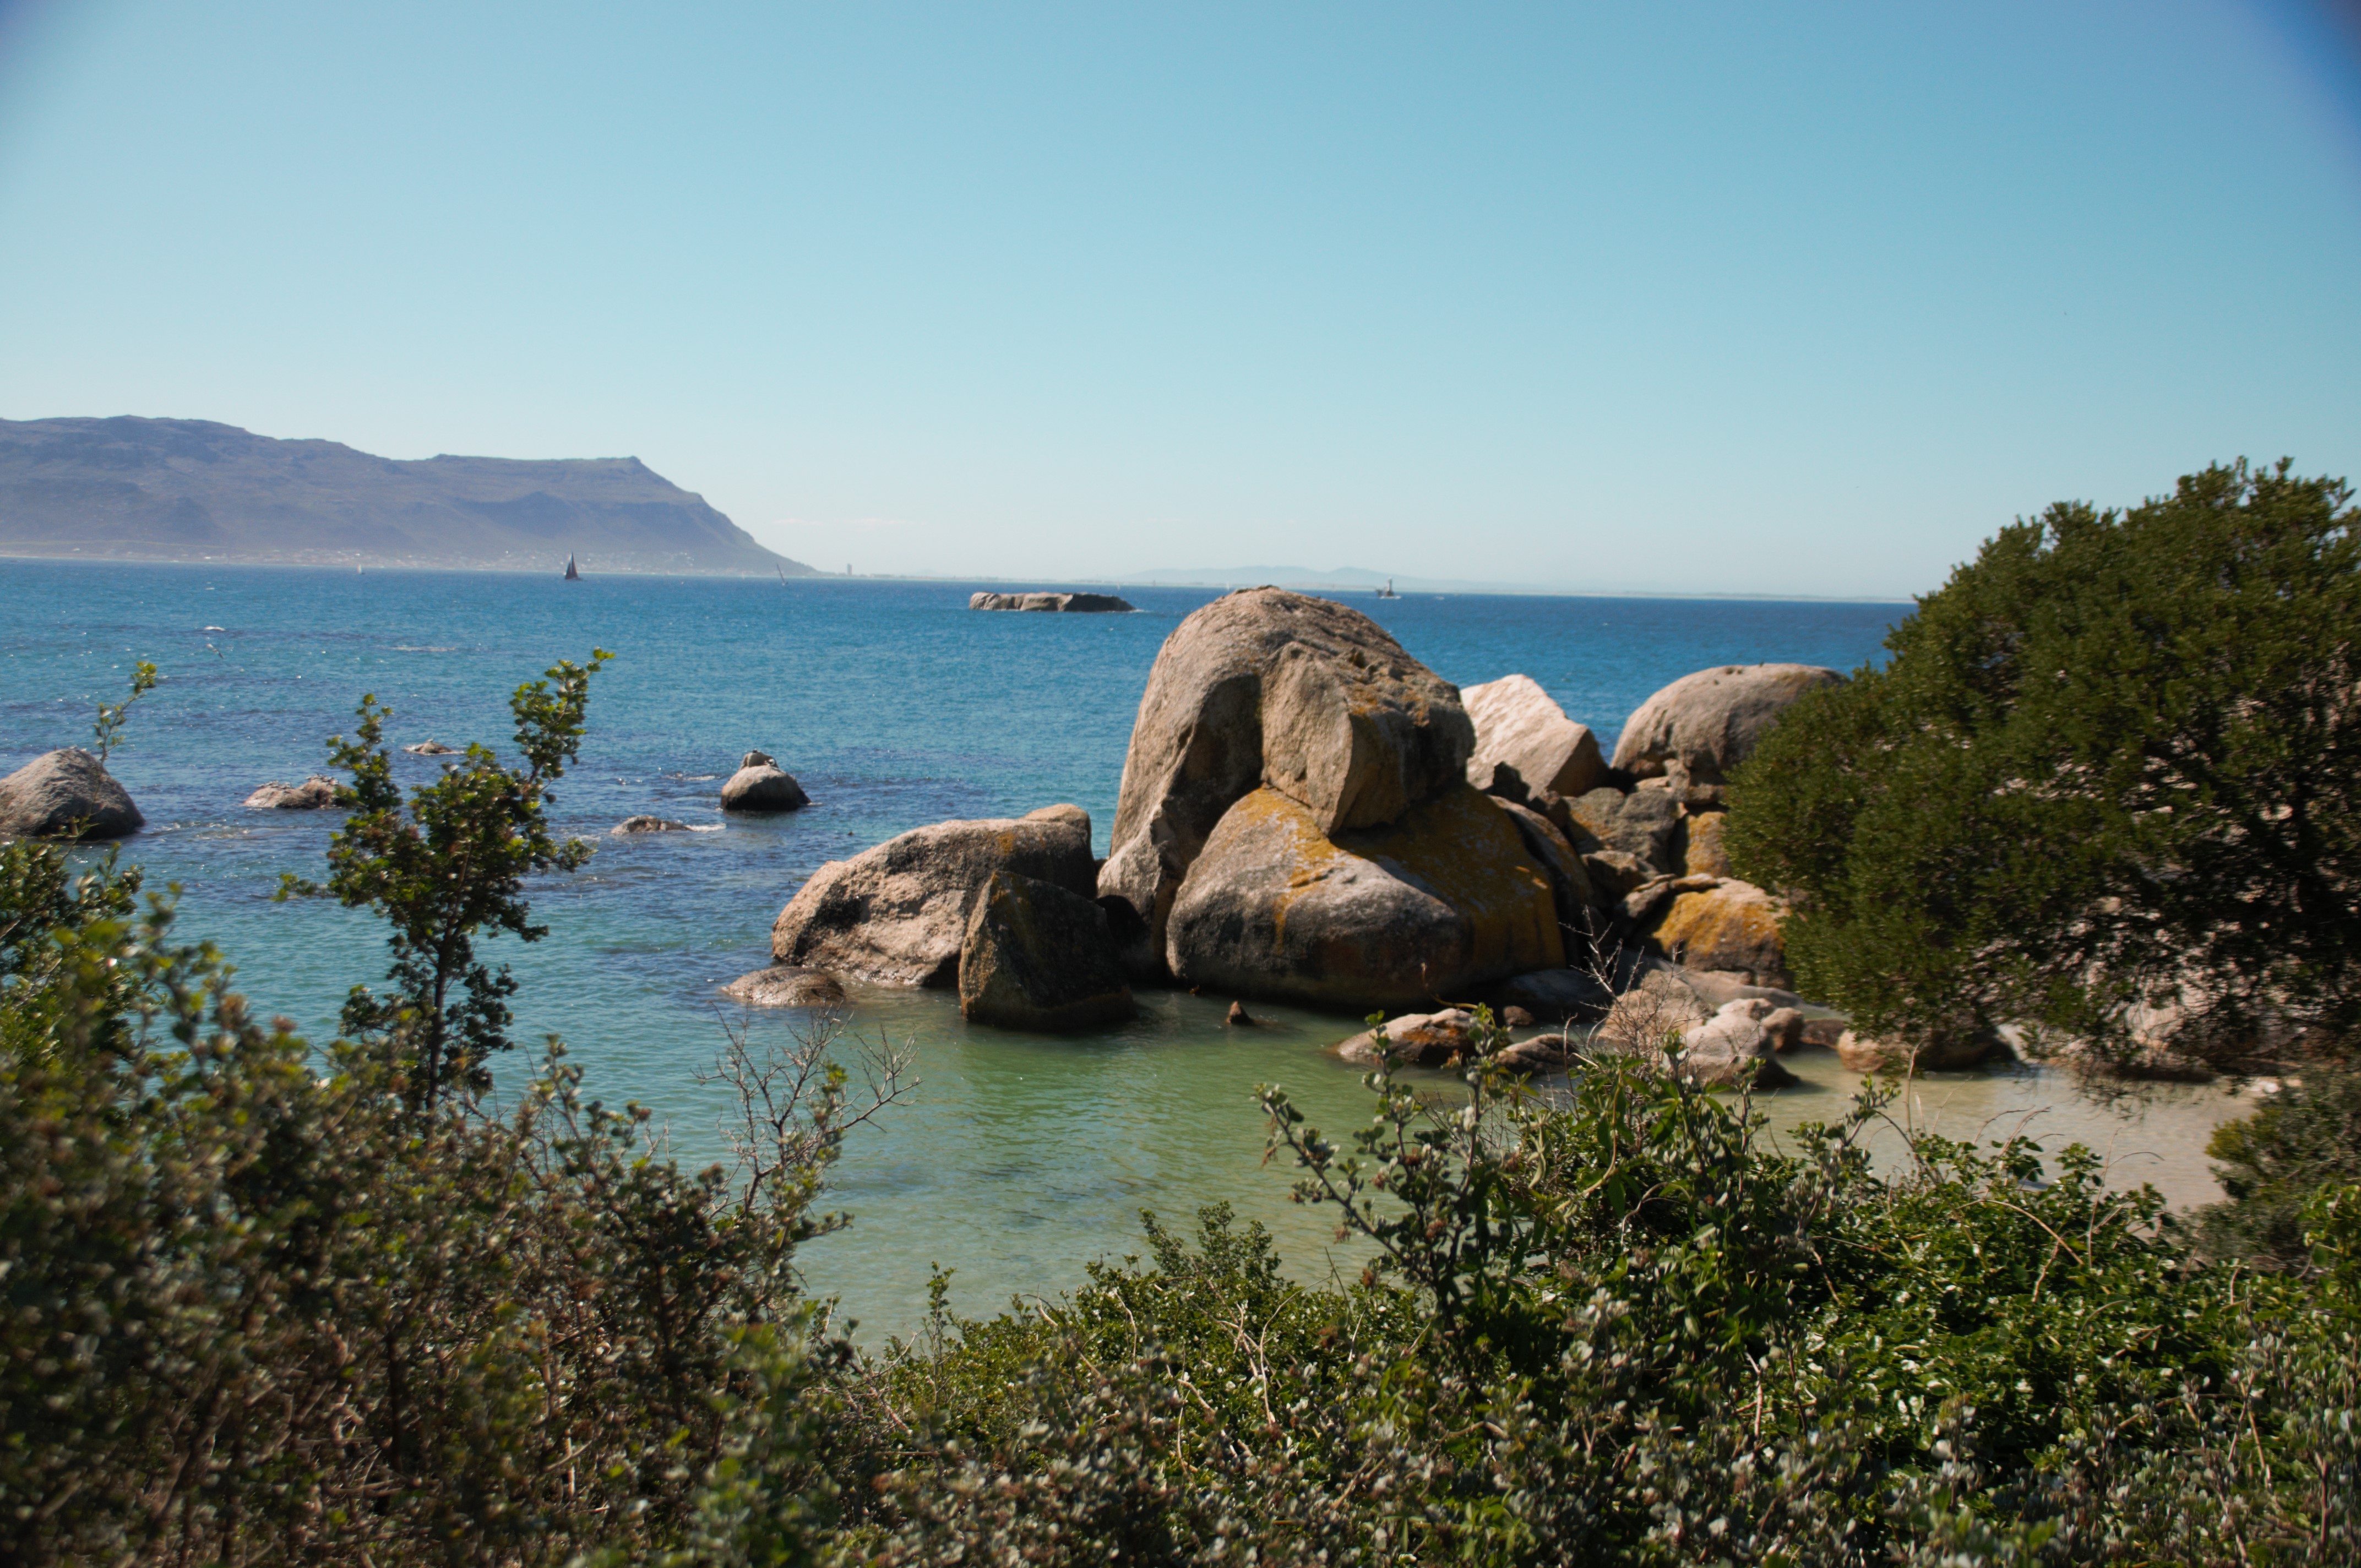 Boulders’ beach, Western Cape, Afrique du Sud : boulders et végétation côtière.